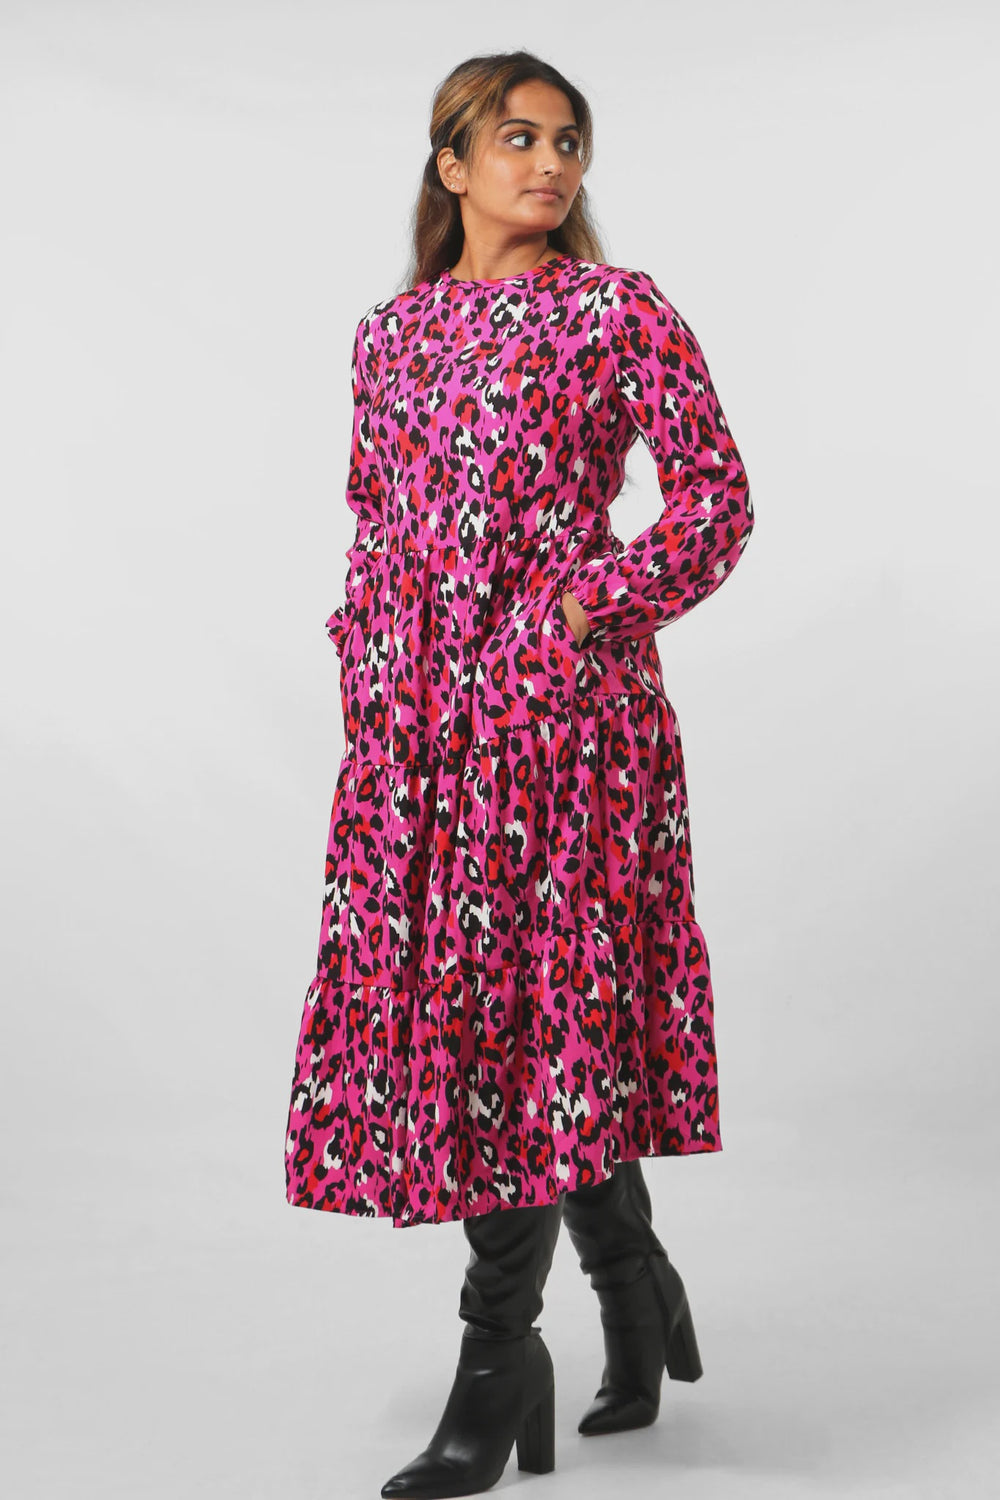 Tiered Leopard Print Dress - Fuchsia